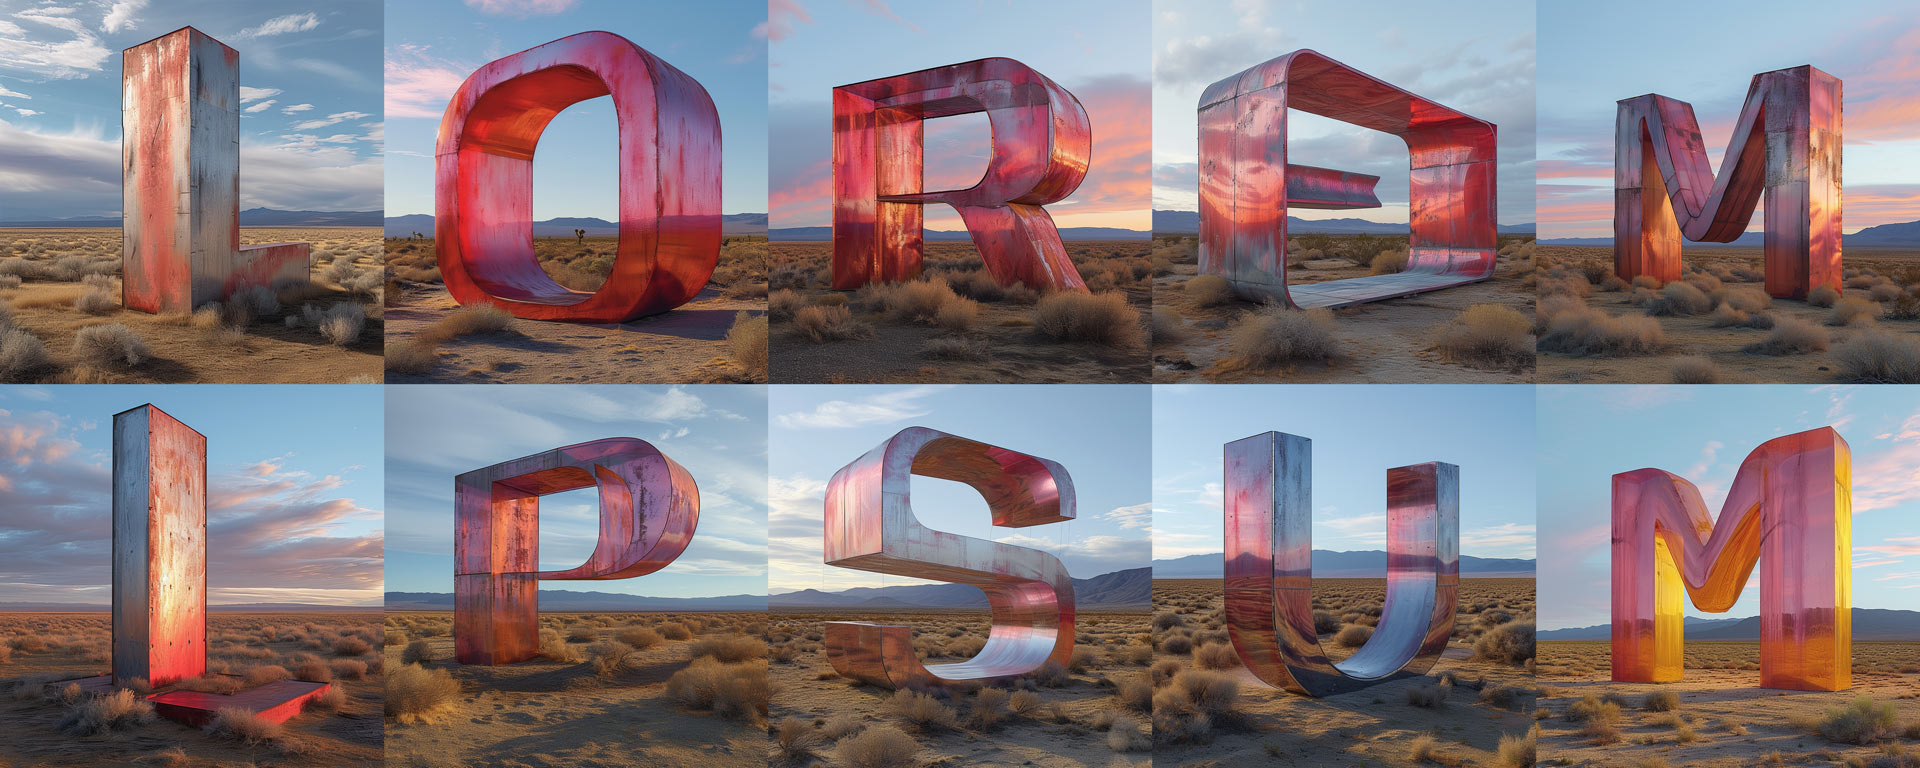 042-lorem-ipsum-red-sculpture-desert